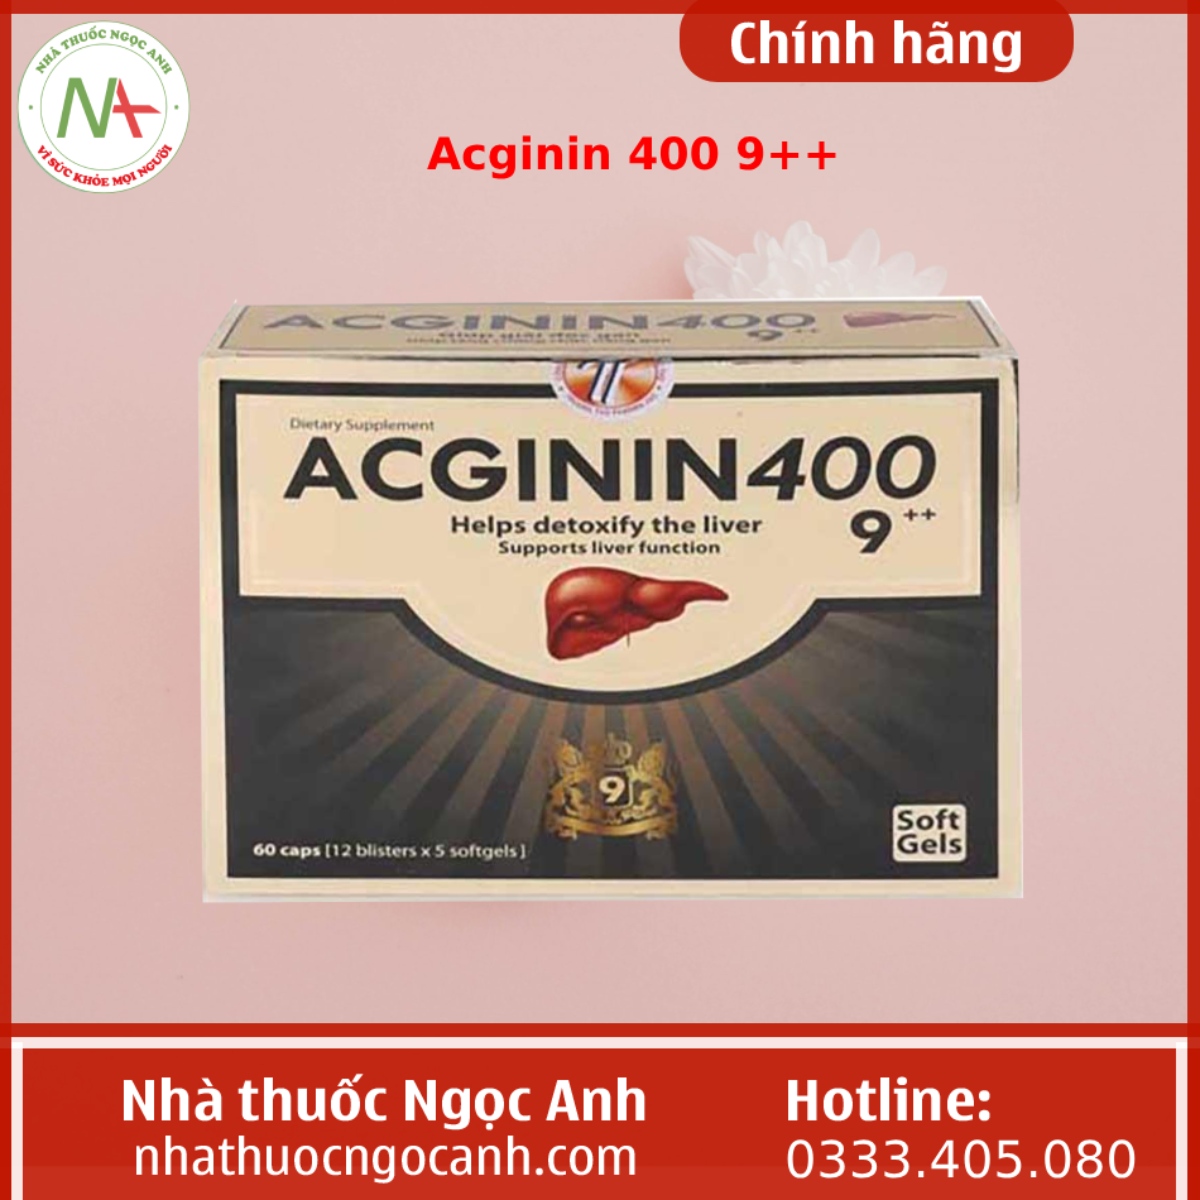 Acginin 400 9++